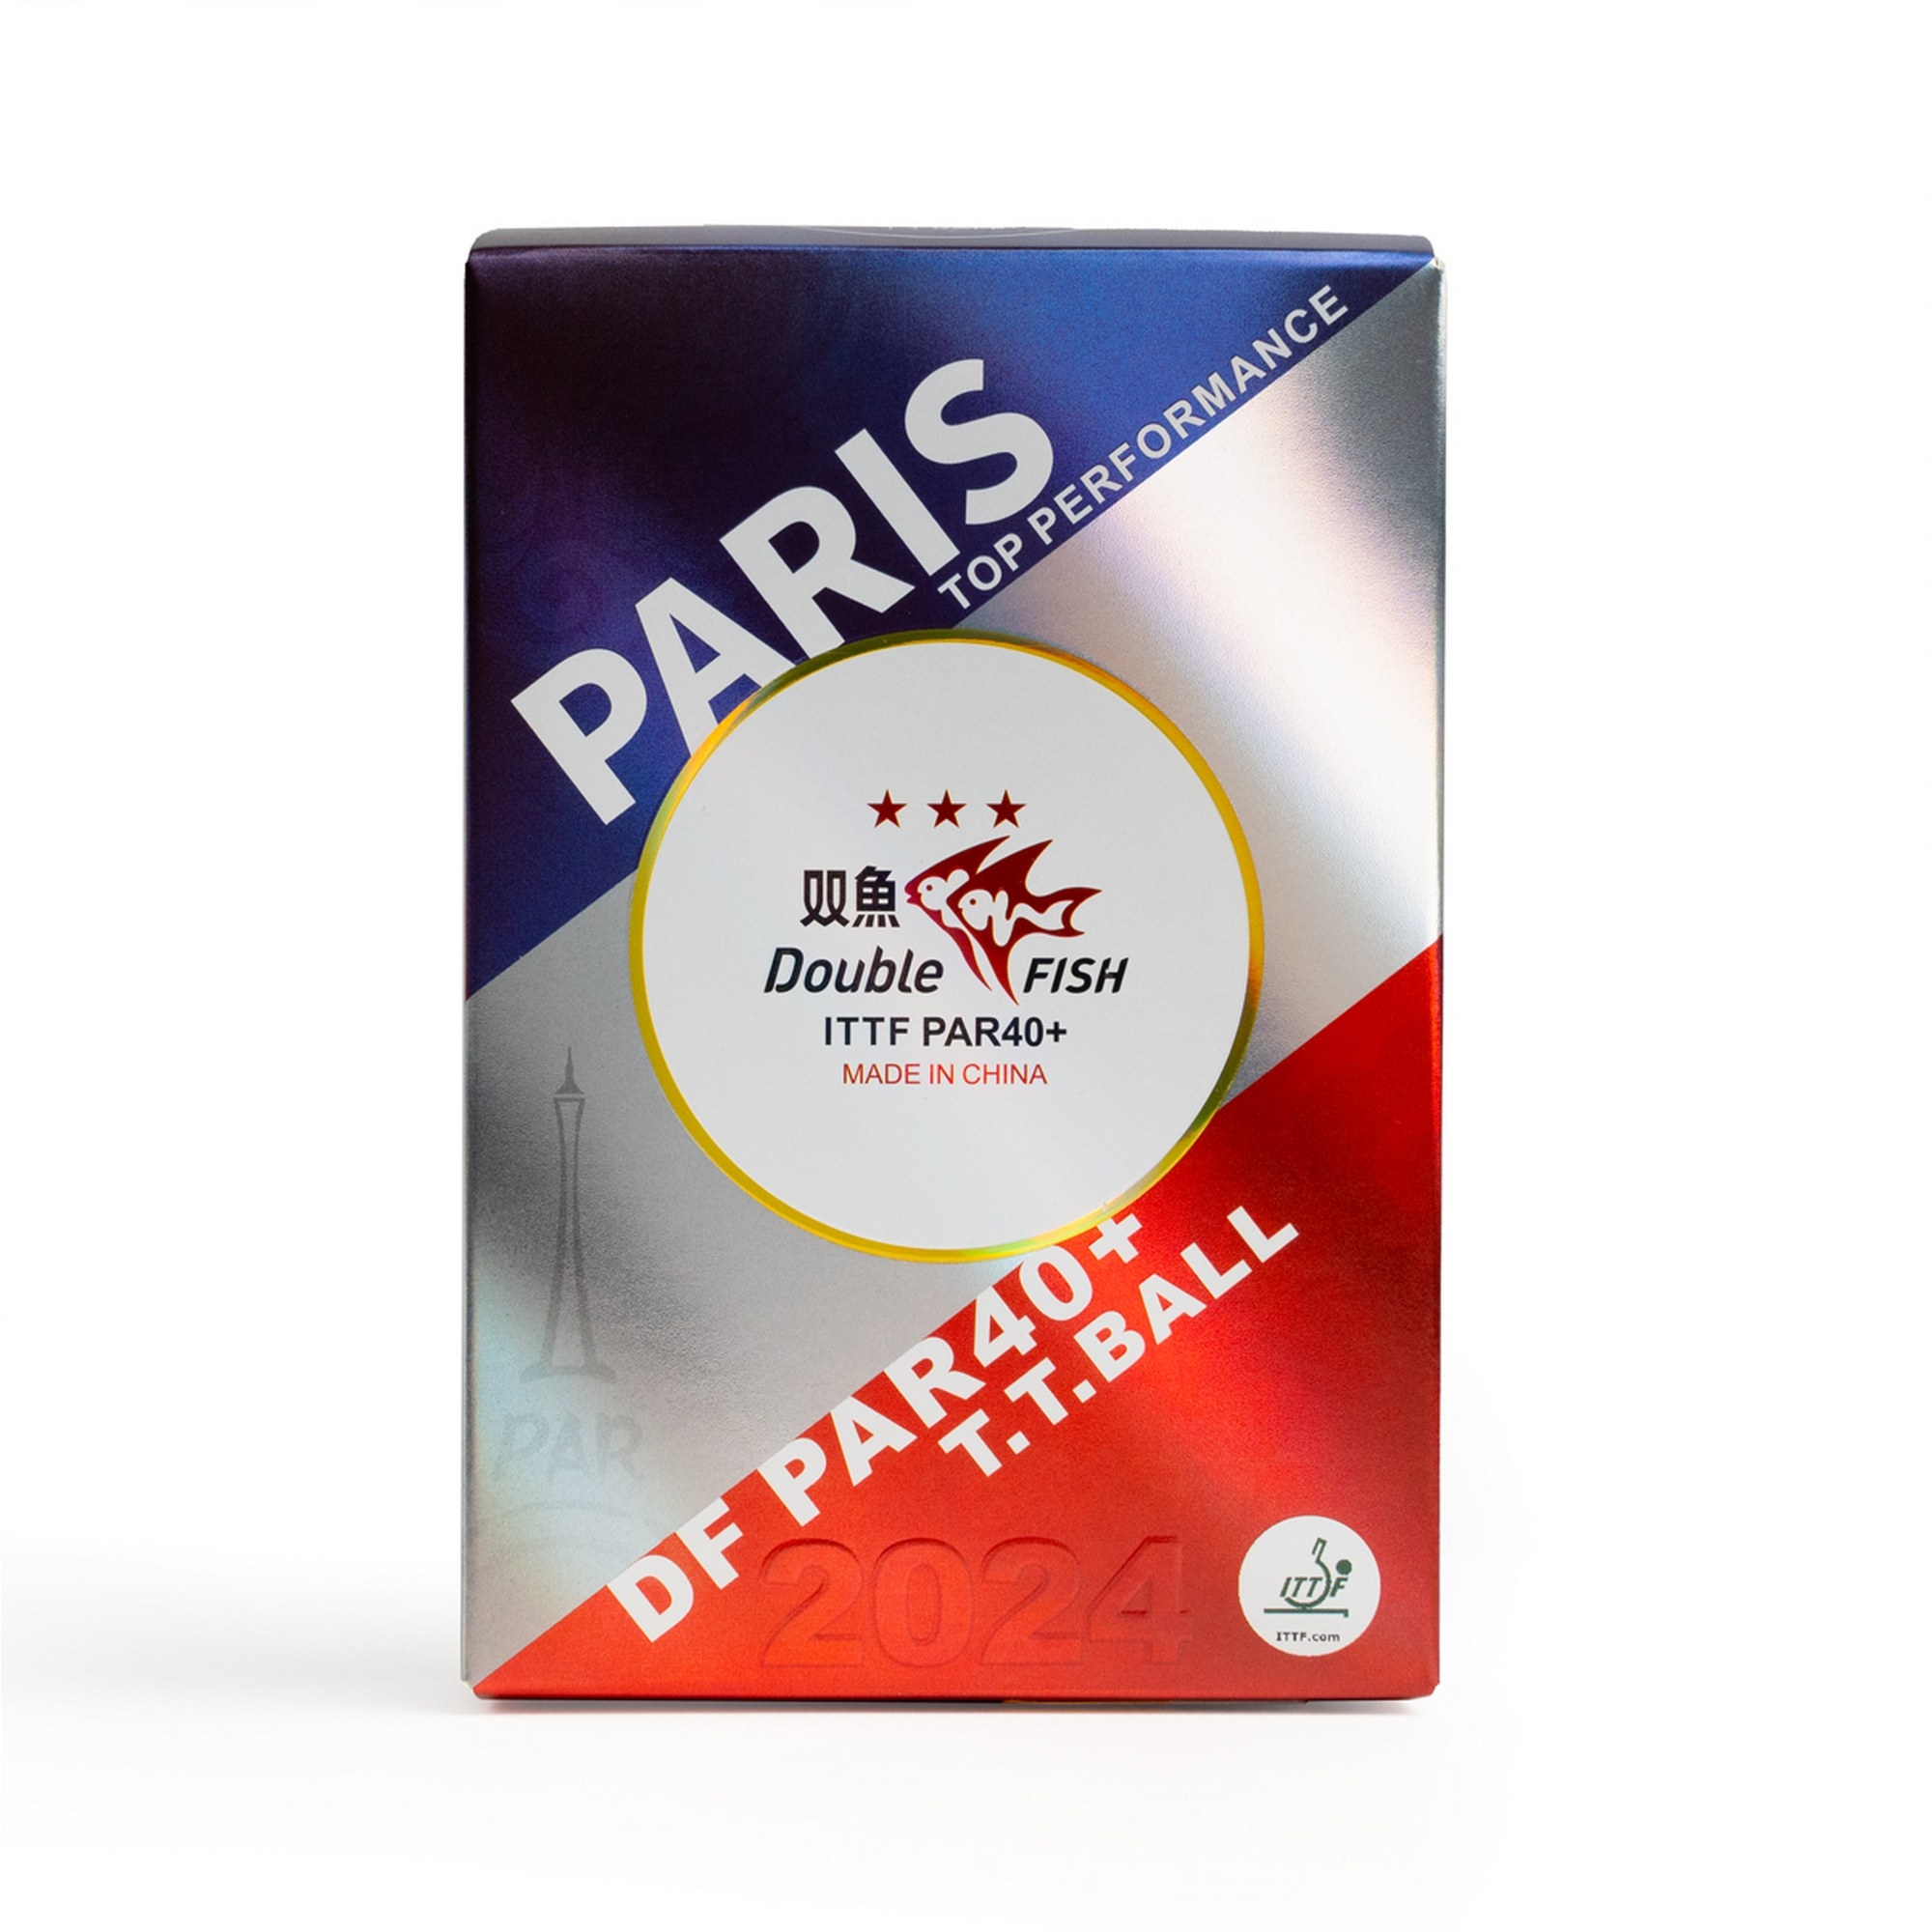 Мяч для настольного тенниса Double Fish Paris 2024 Olympic Games 3*** PAR40+ ITTF Approved, 6шт 2000_2000